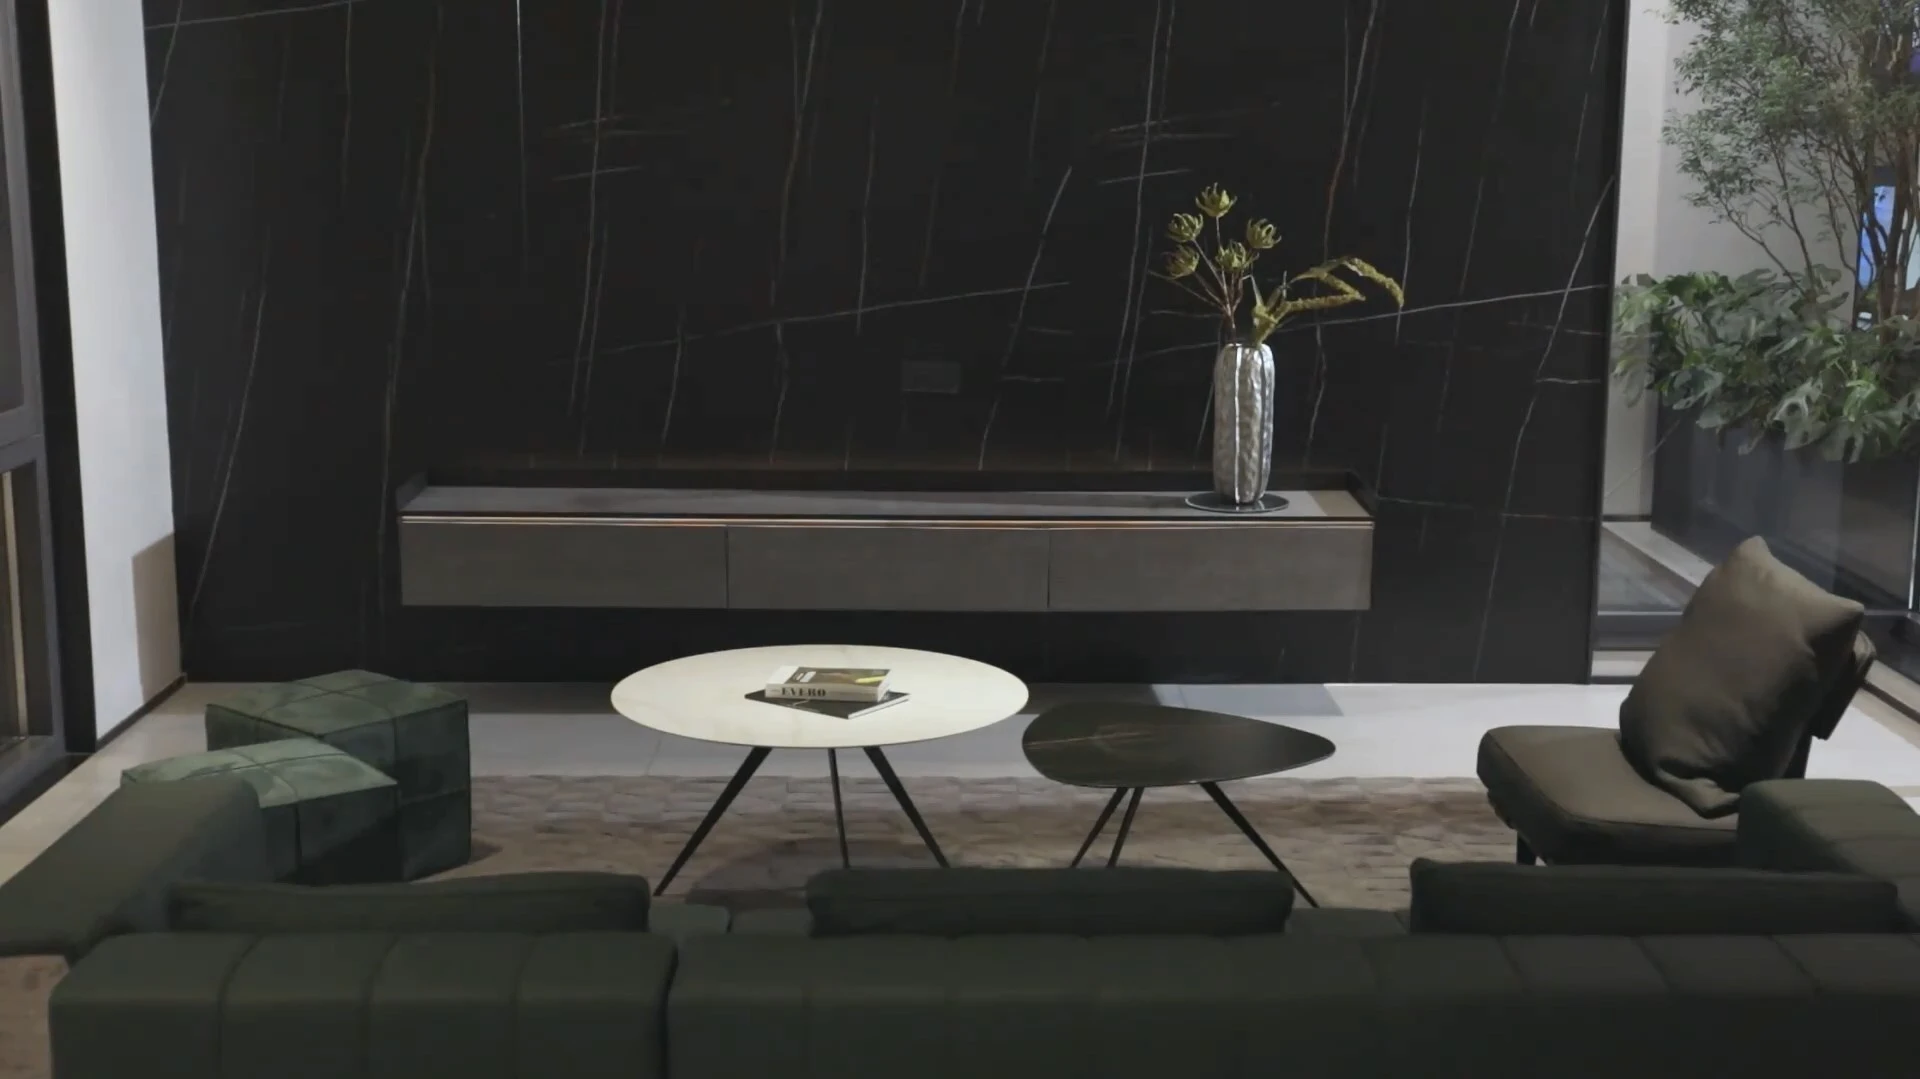 BK CIANDRE Очаровательный керамический стол для вашего дома [Мраморный керамический стол]